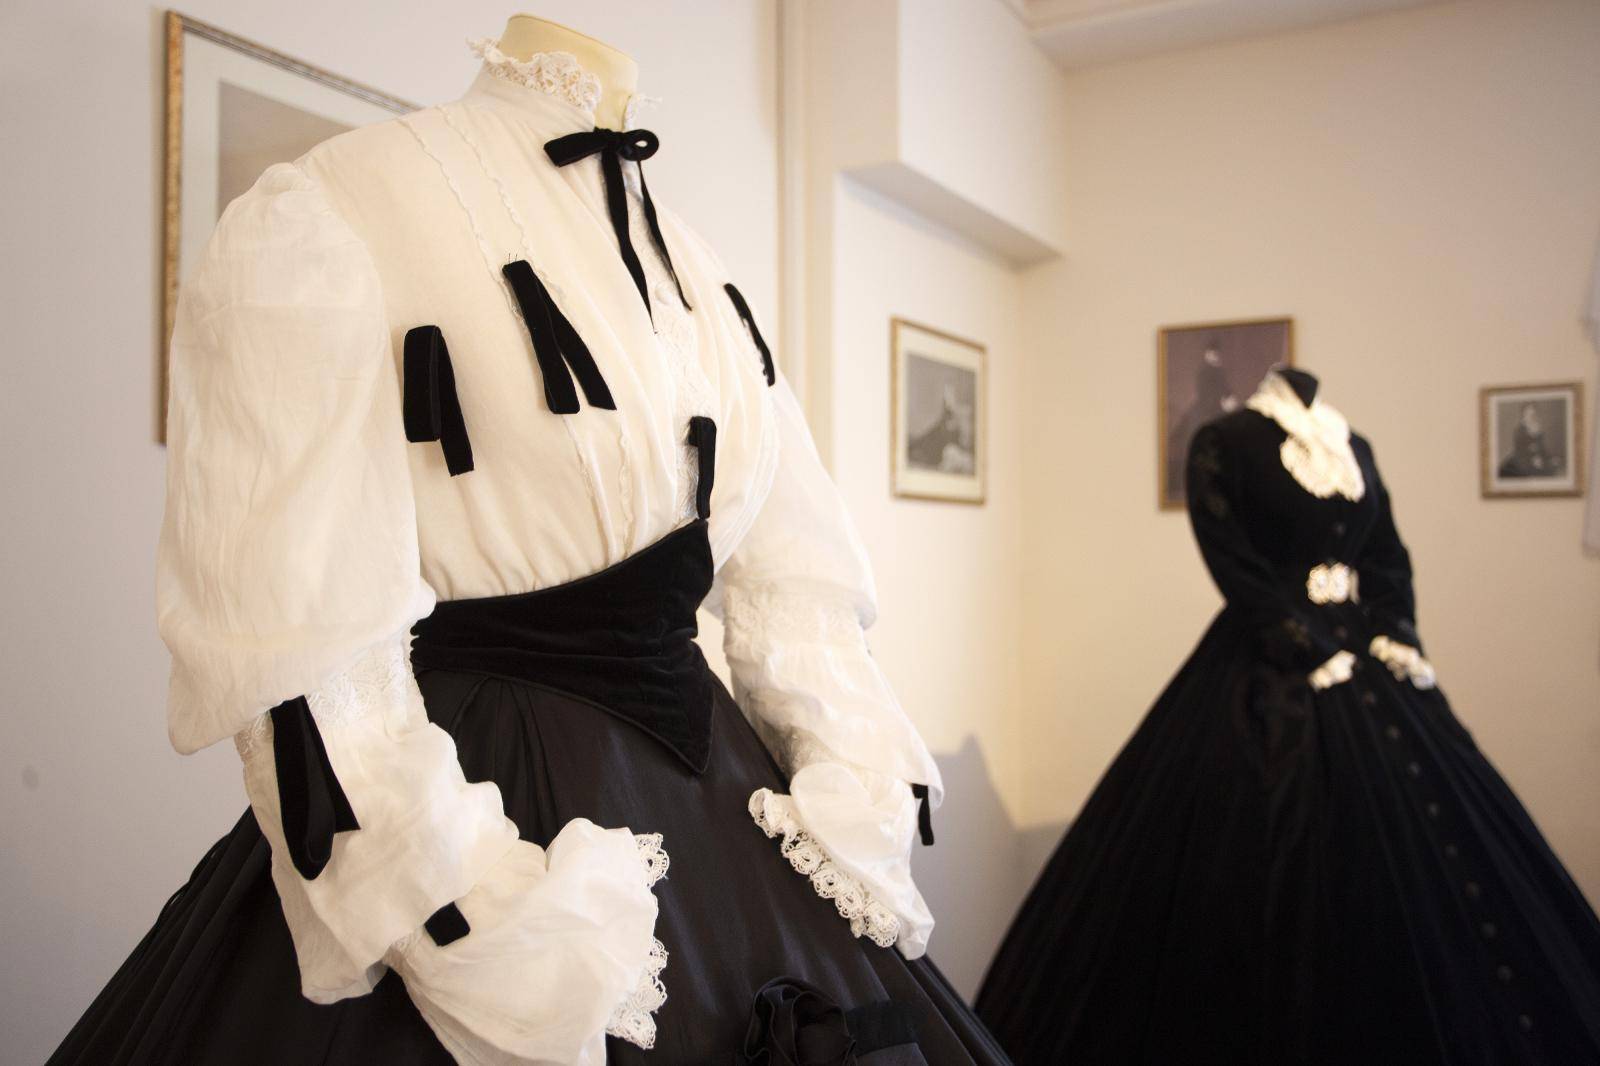 Raskošne replike haljina carice Sisi izložene su u srcu Opatije